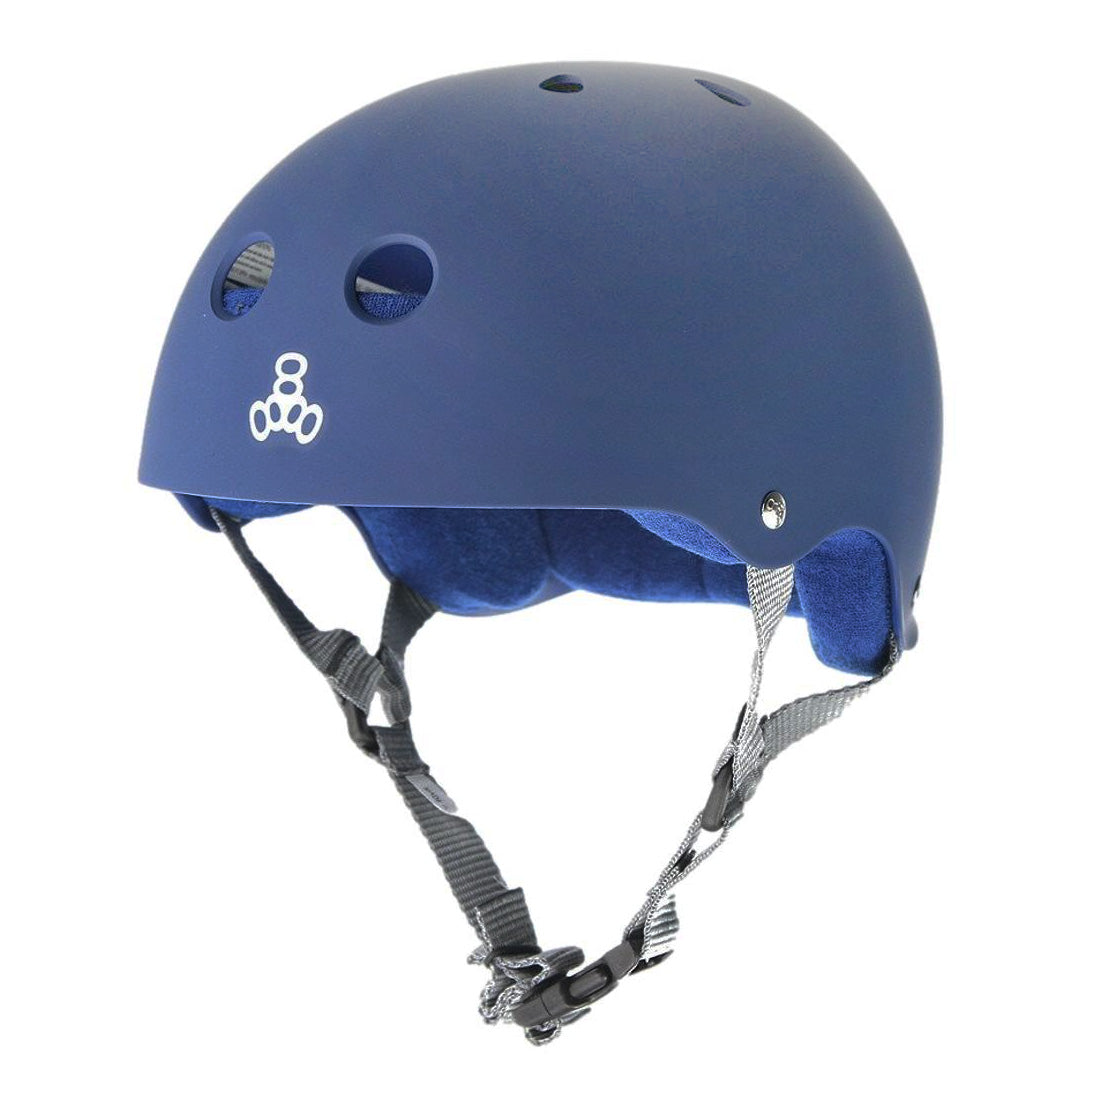 Triple 8 Skate SS Helmet - Blue Navy Rubber Helmets